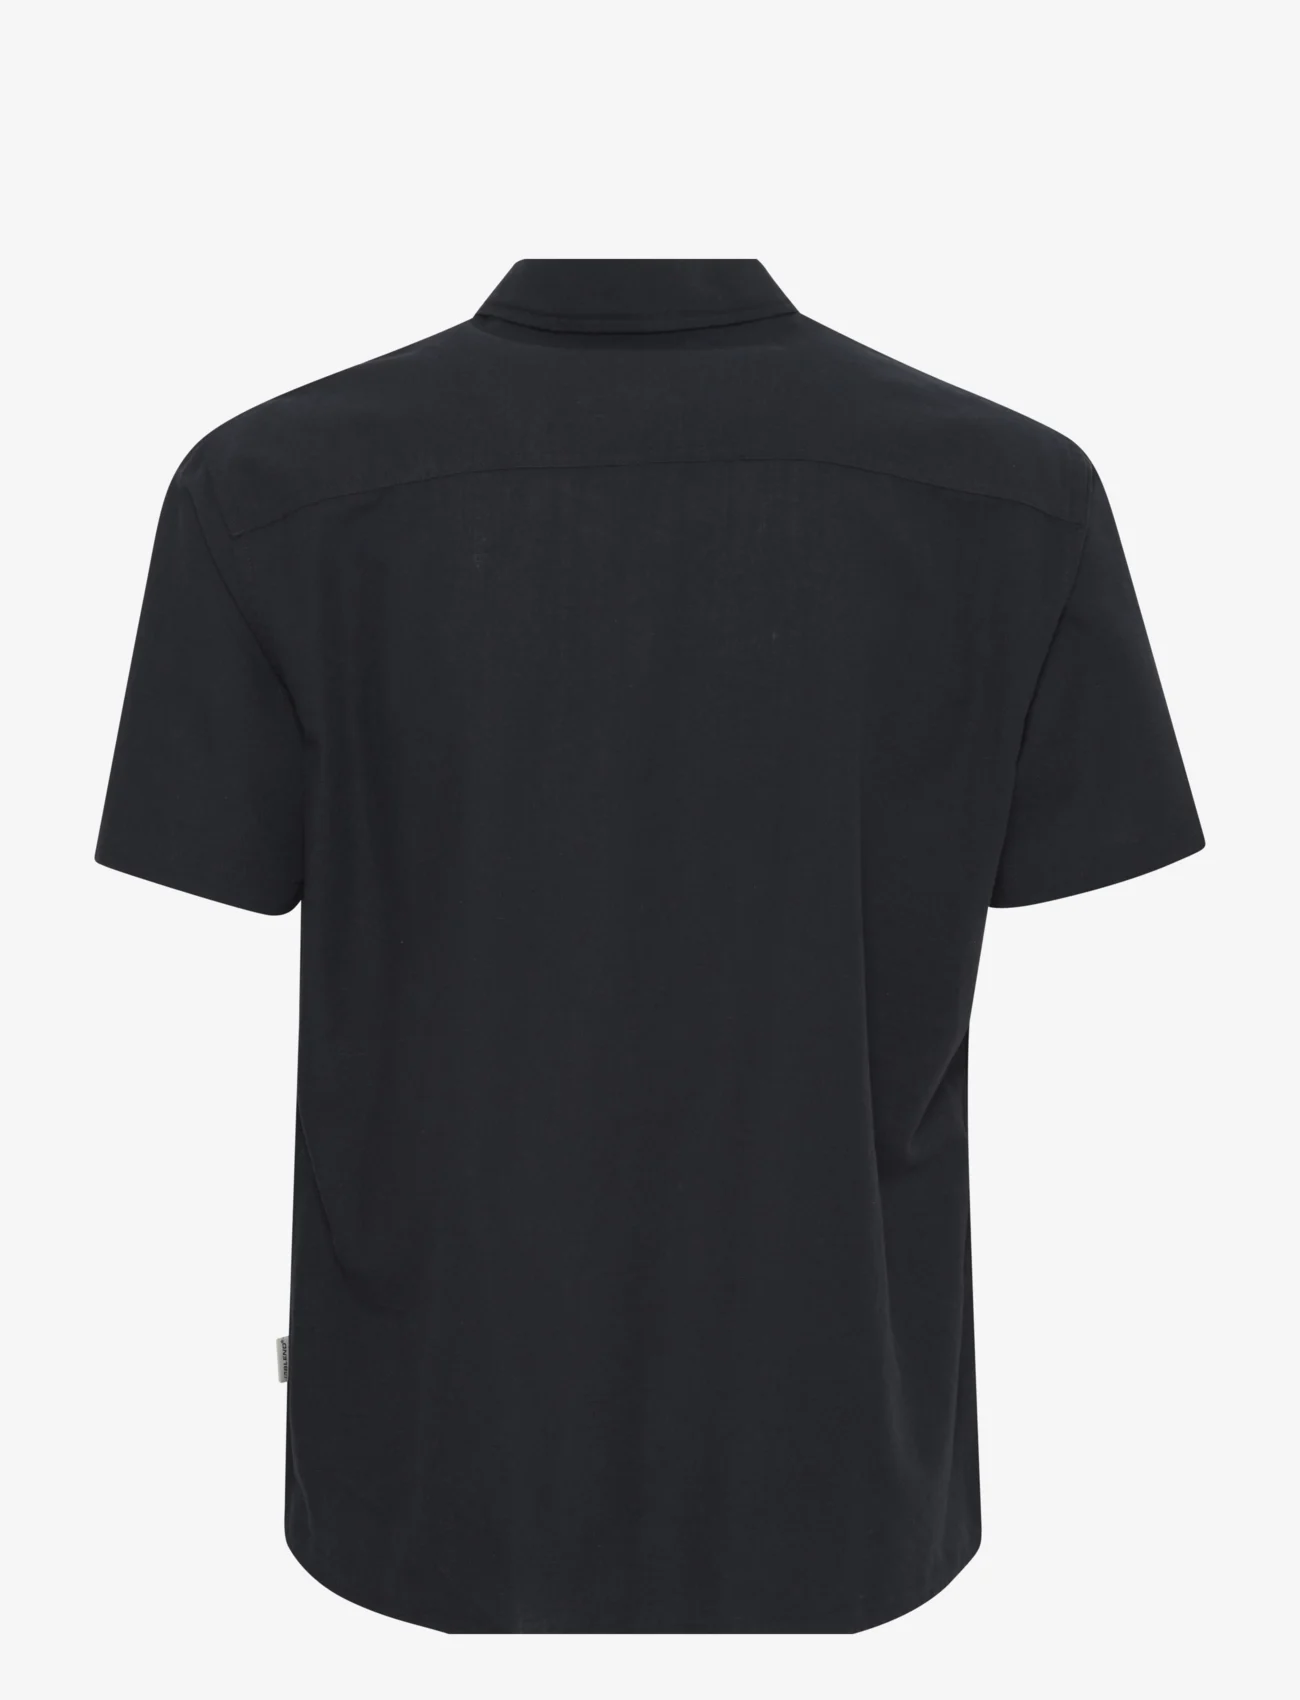 Blend - Shirt - basic shirts - black - 1